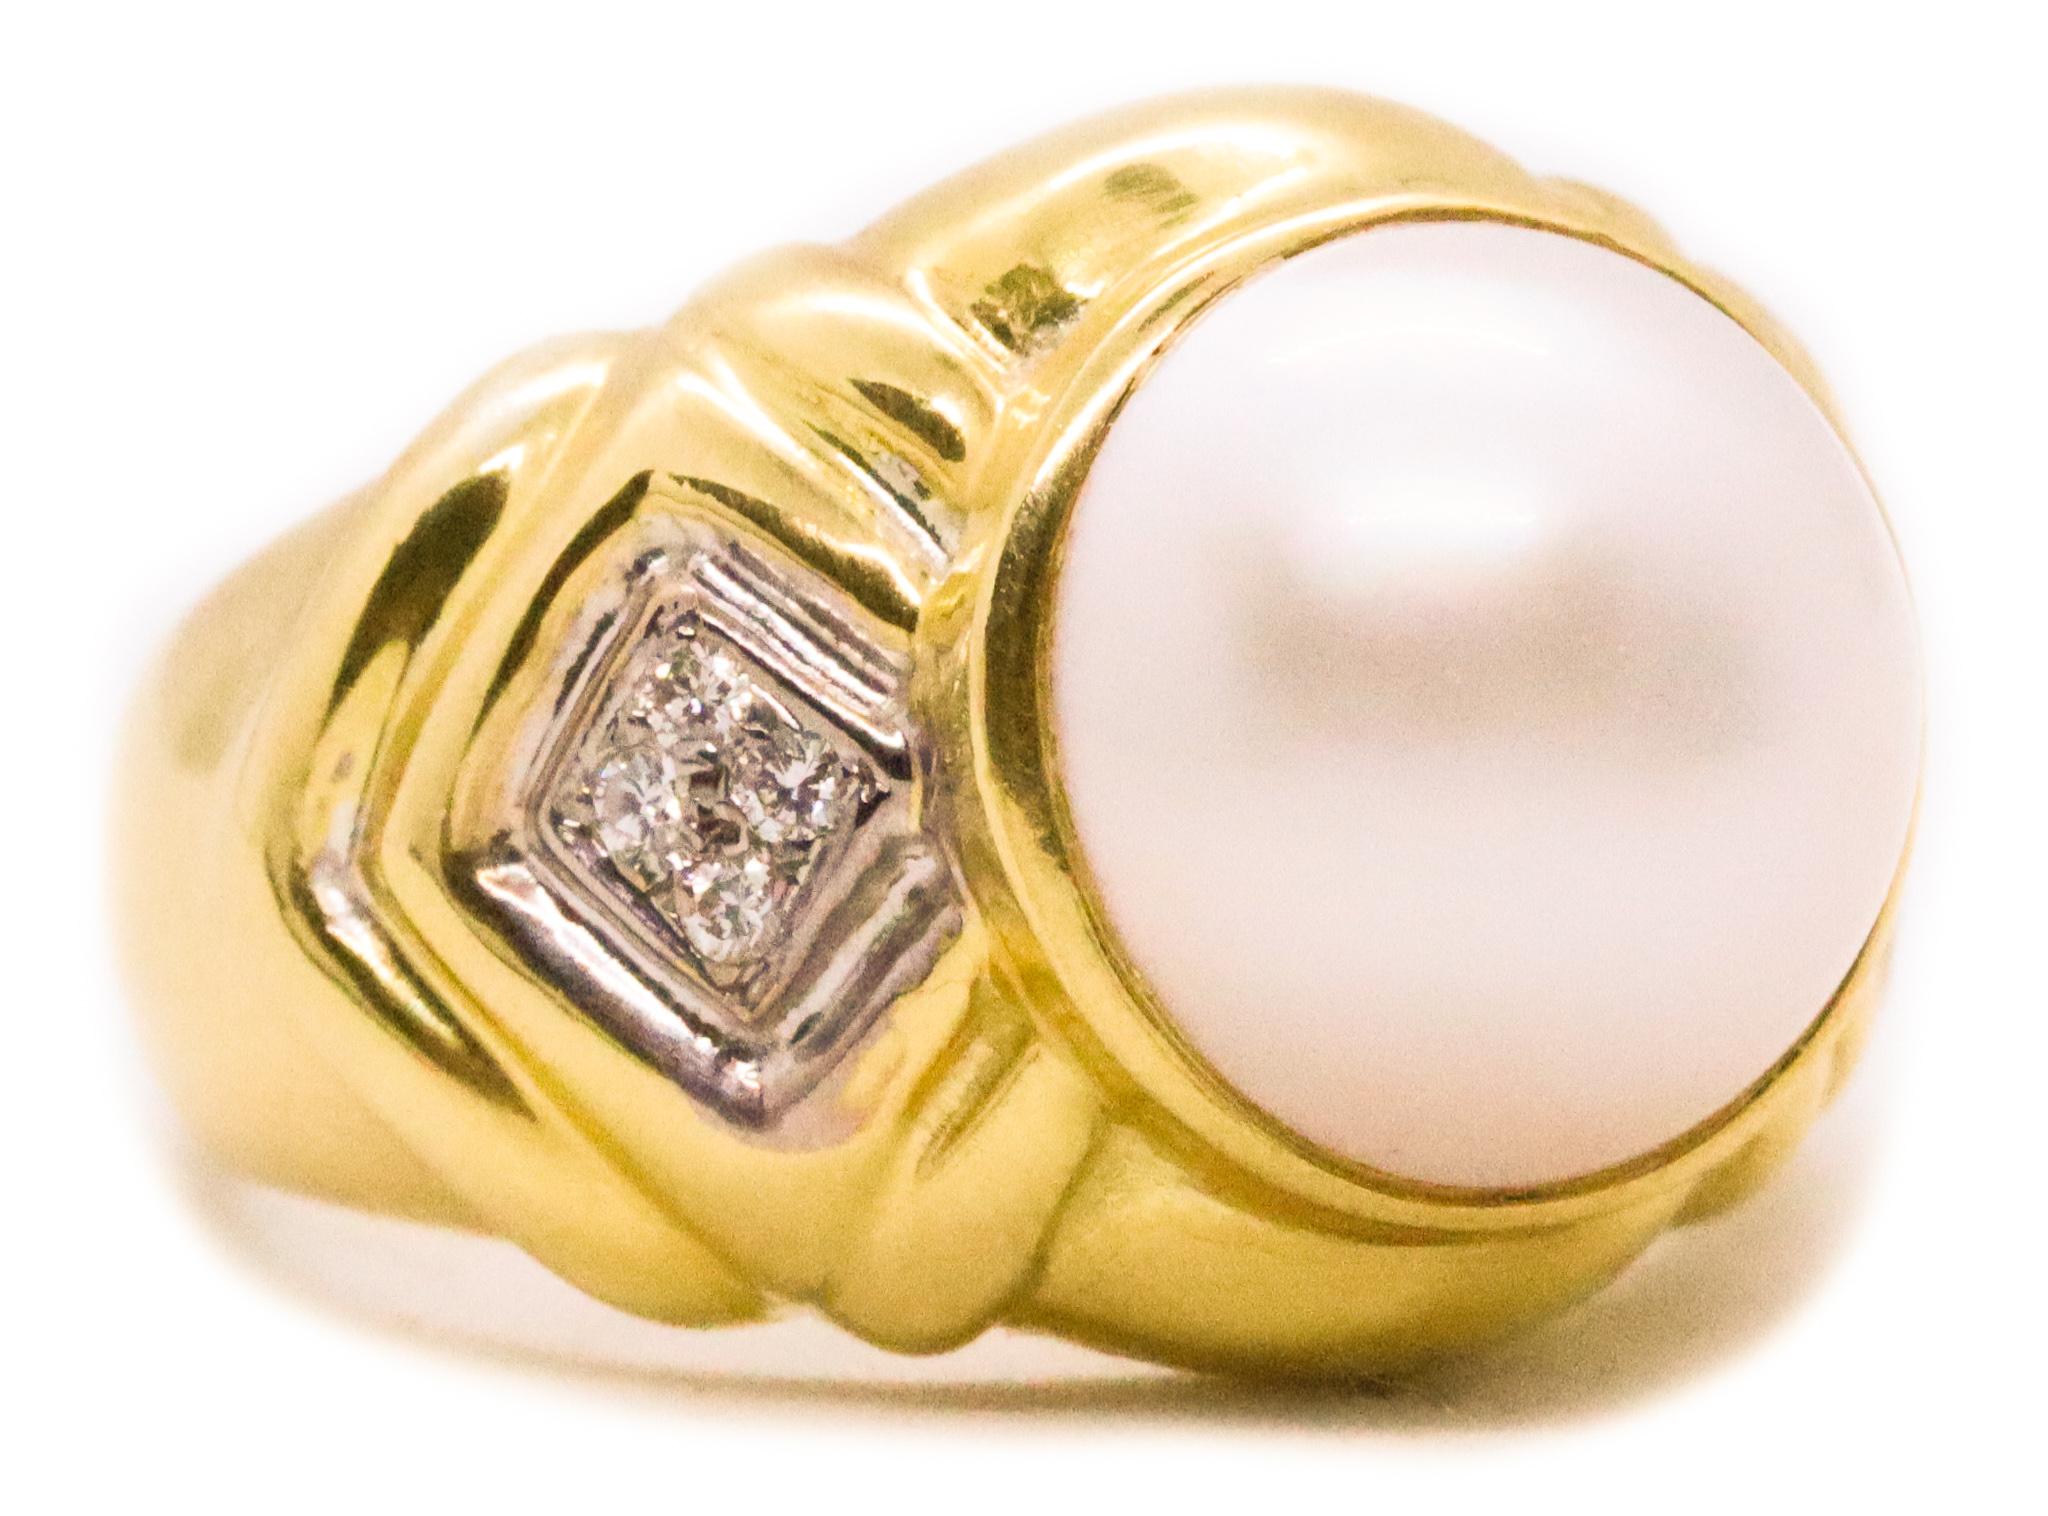 Italian Jewelry Womens Rings | Italian Gold Jewelry Black | Women Ring  Italian Gold - Rings - Aliexpress